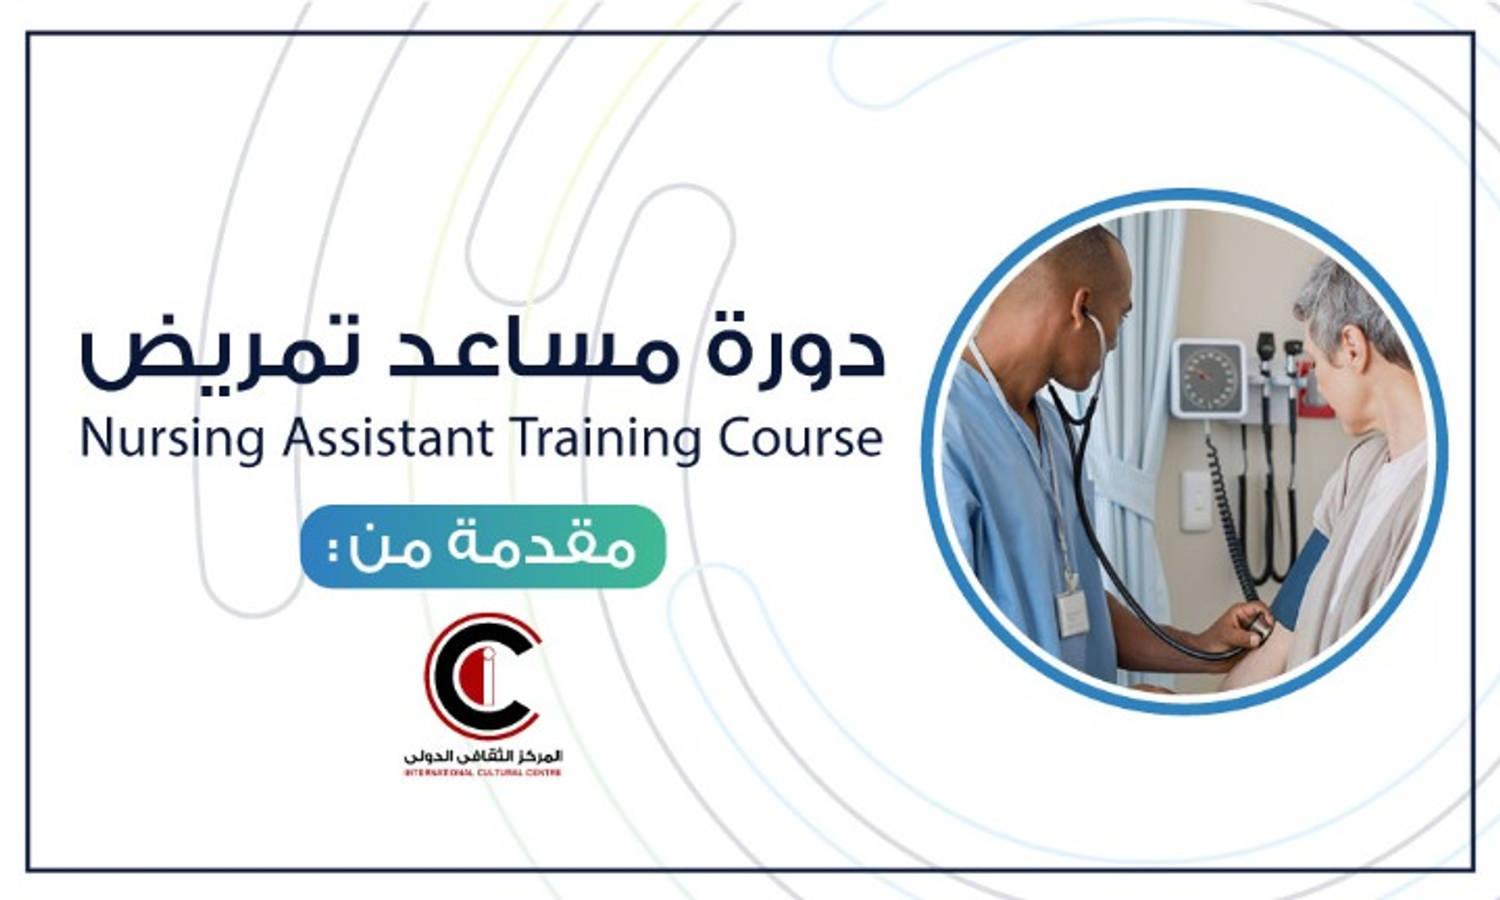 Nursing Assistant Training Course 